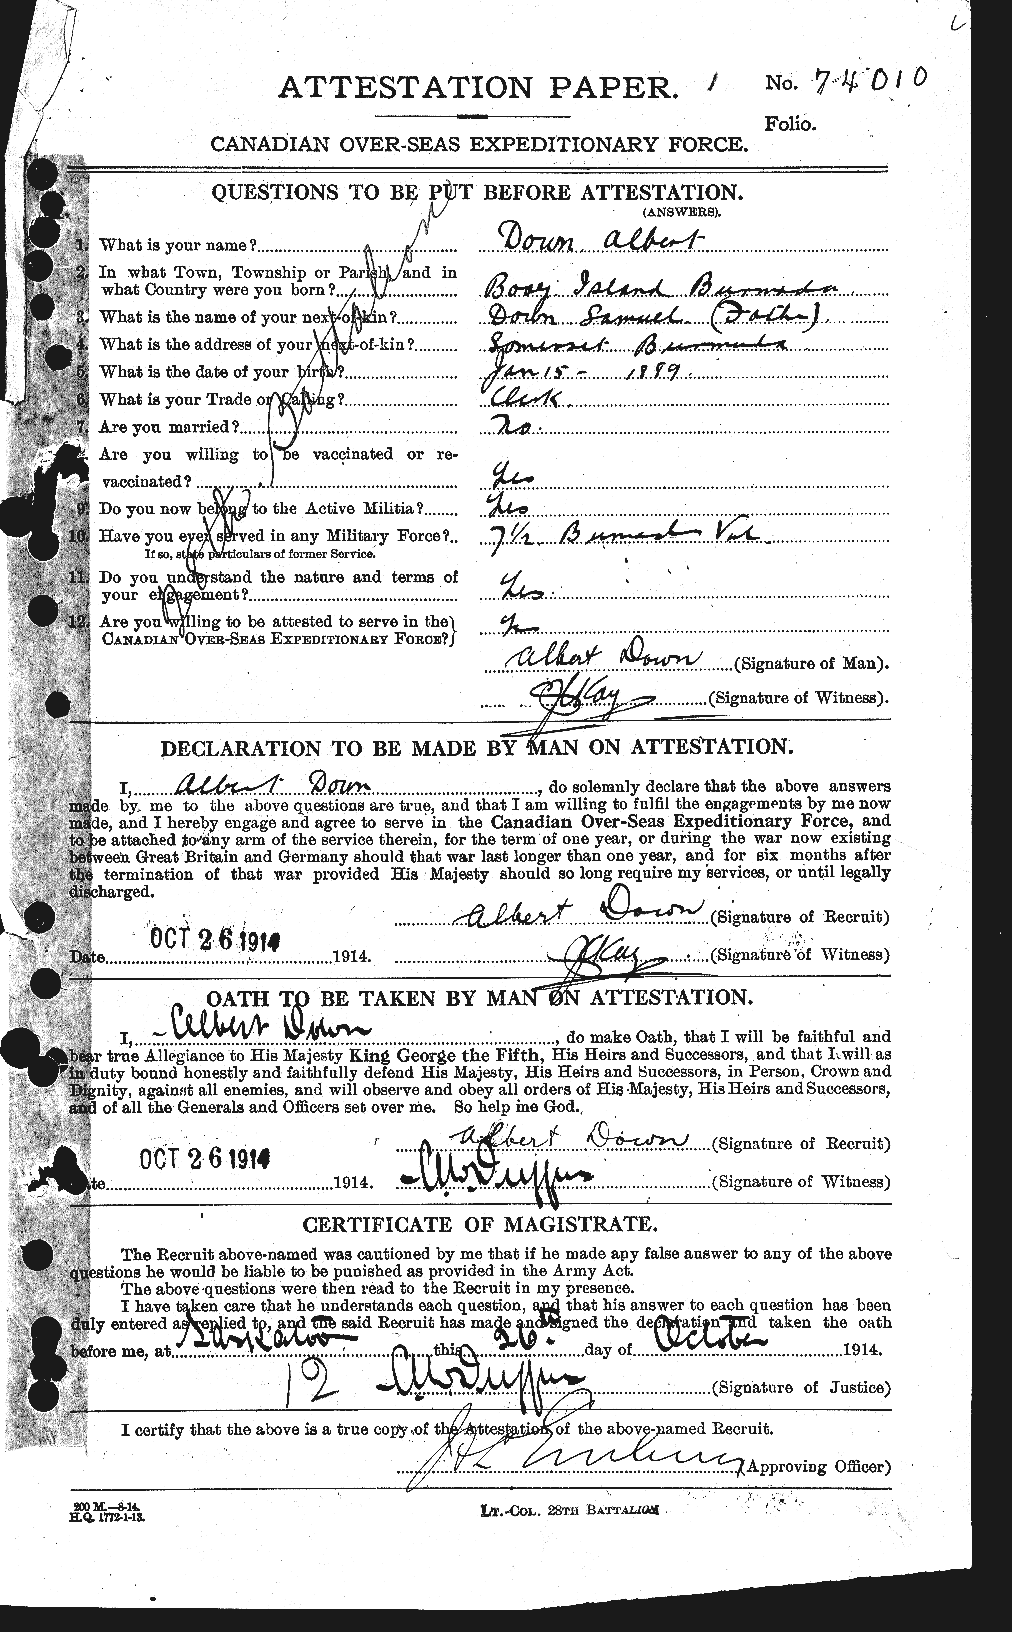 Dossiers du Personnel de la Première Guerre mondiale - CEC 299919a